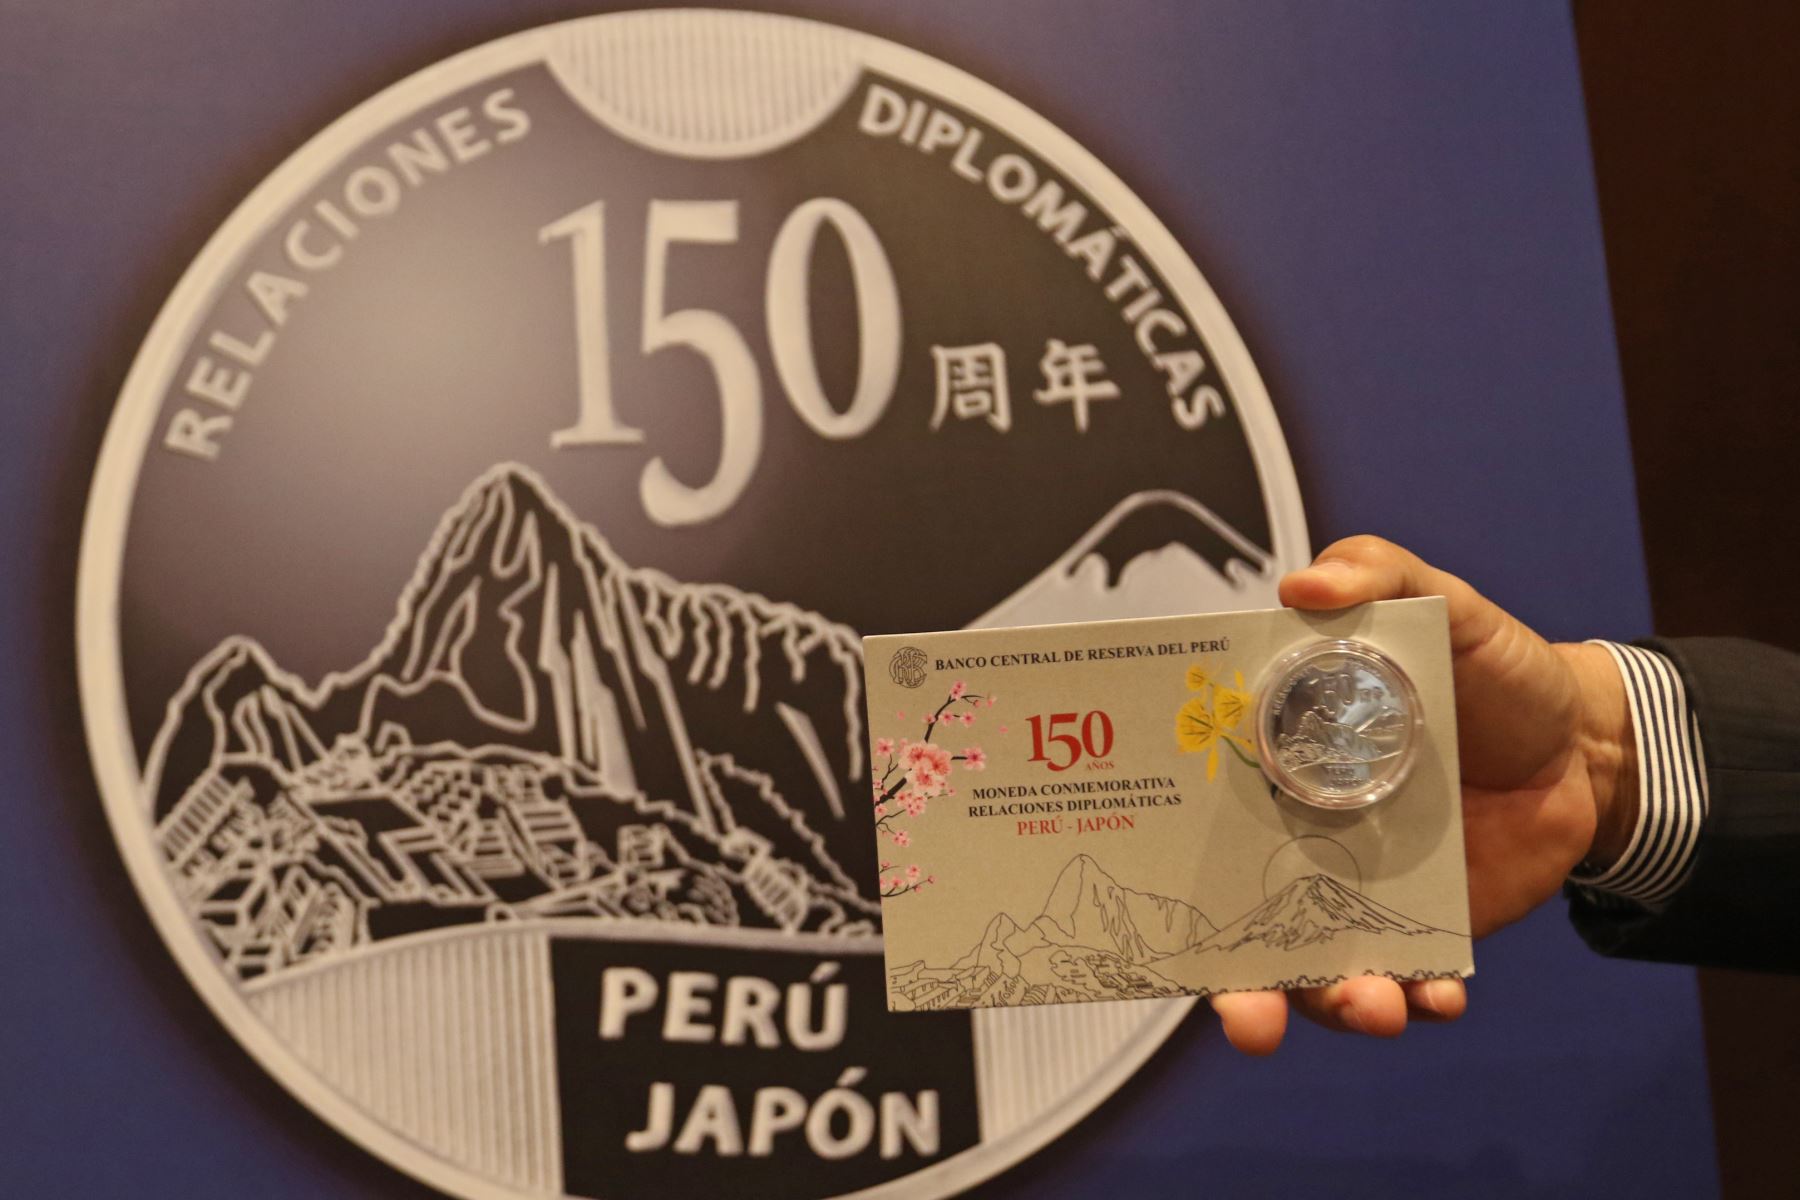 Presentación de la moneda alusiva al 150 aniversario de las relaciones diplomáticas entre el Perú y Japón. Foto: ANDINA/Héctor Vinces